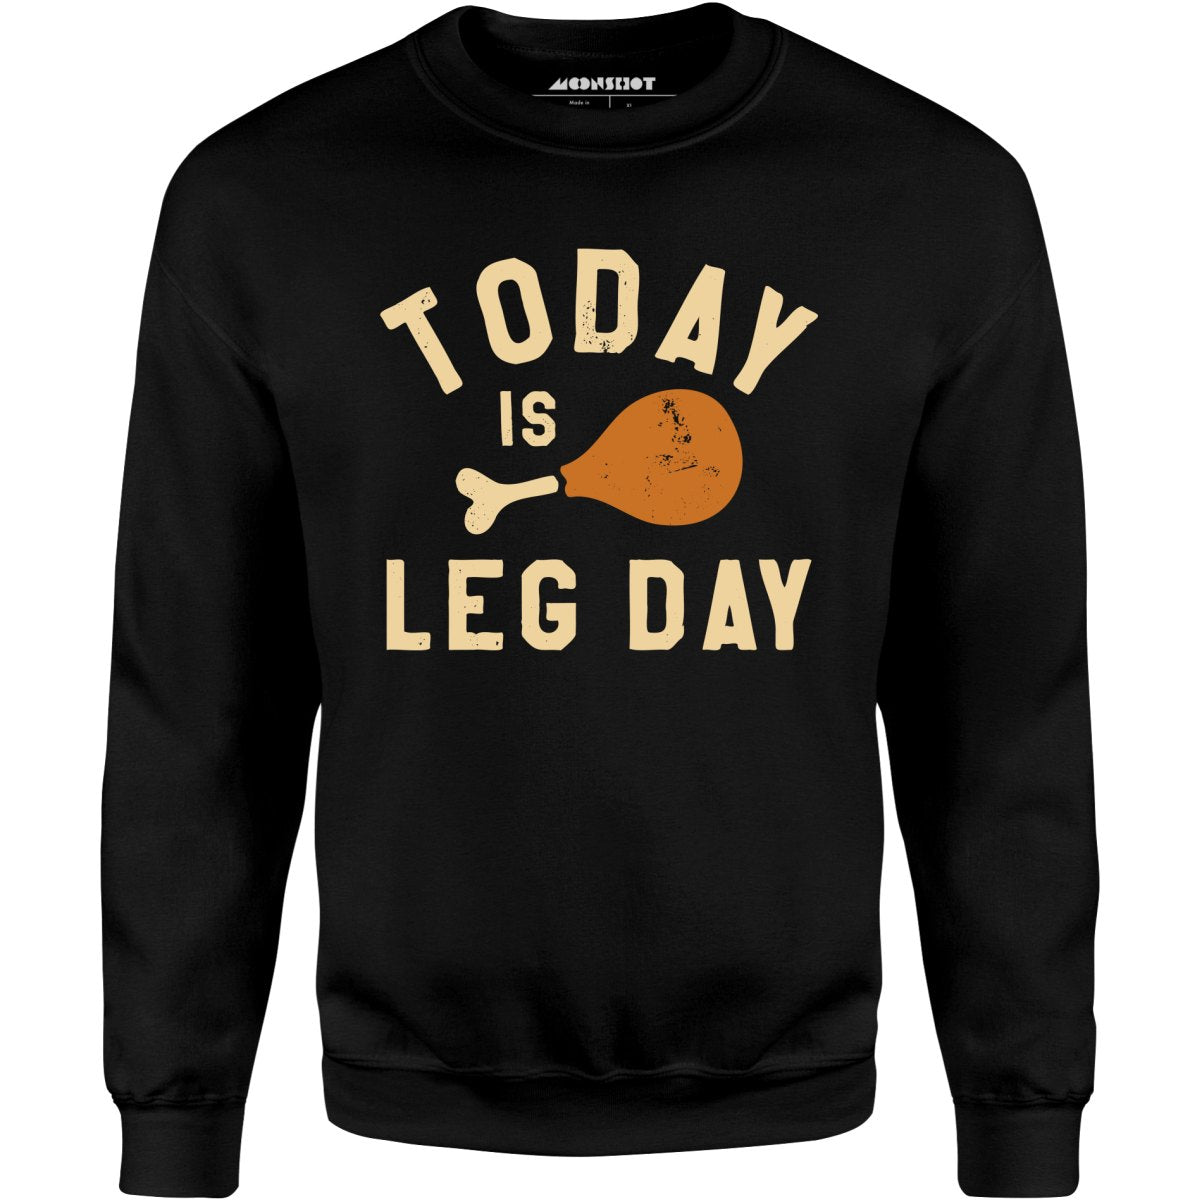 Today is Leg Day - Unisex Sweatshirt